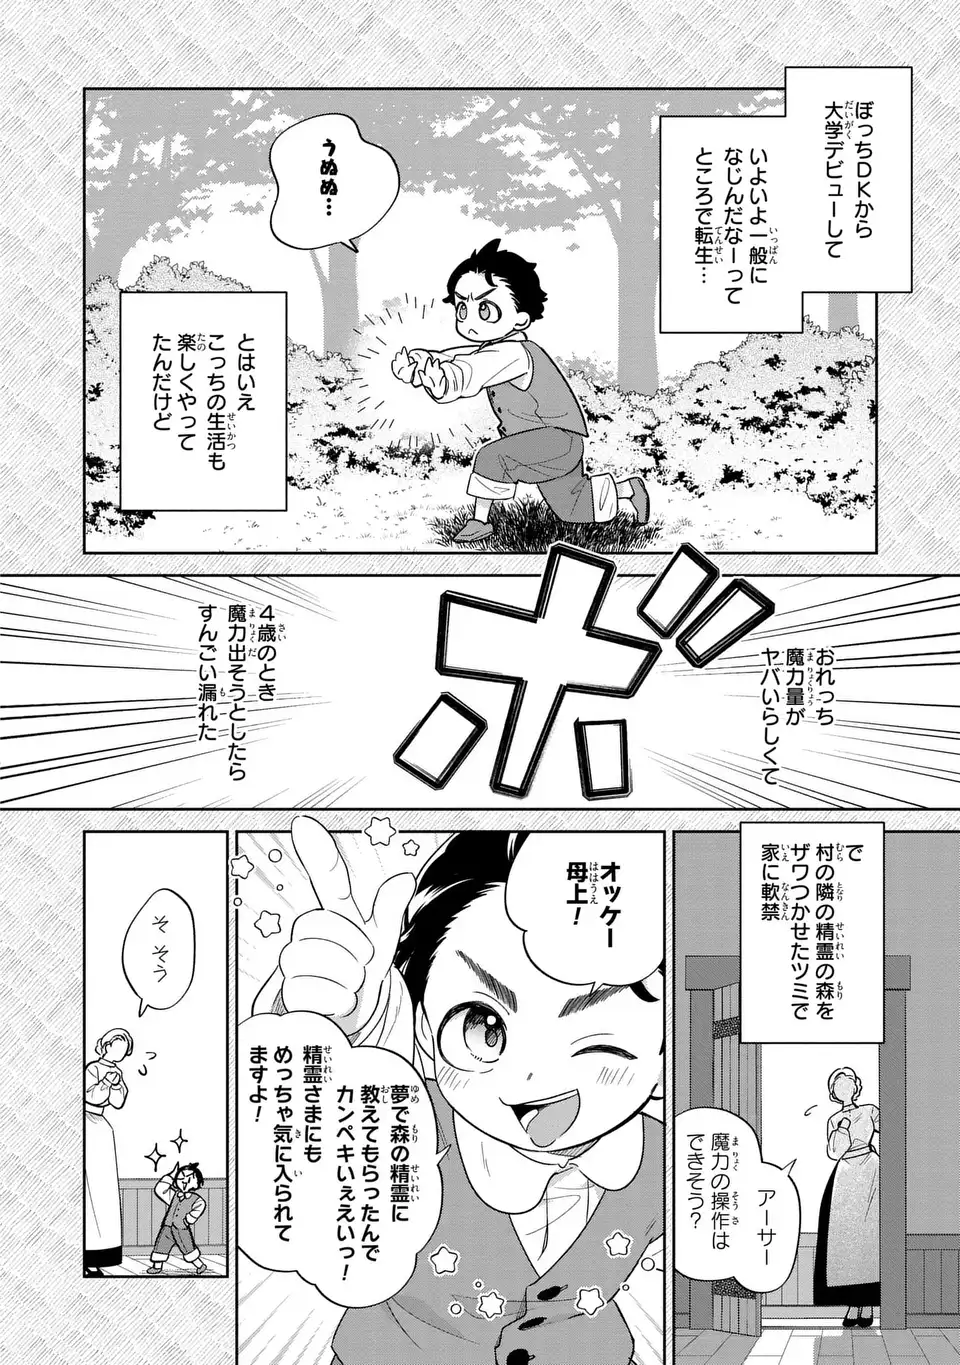 Akuyaku no Goreisoku no Dounika shitai Nichijou - Chapter 24 - Page 2